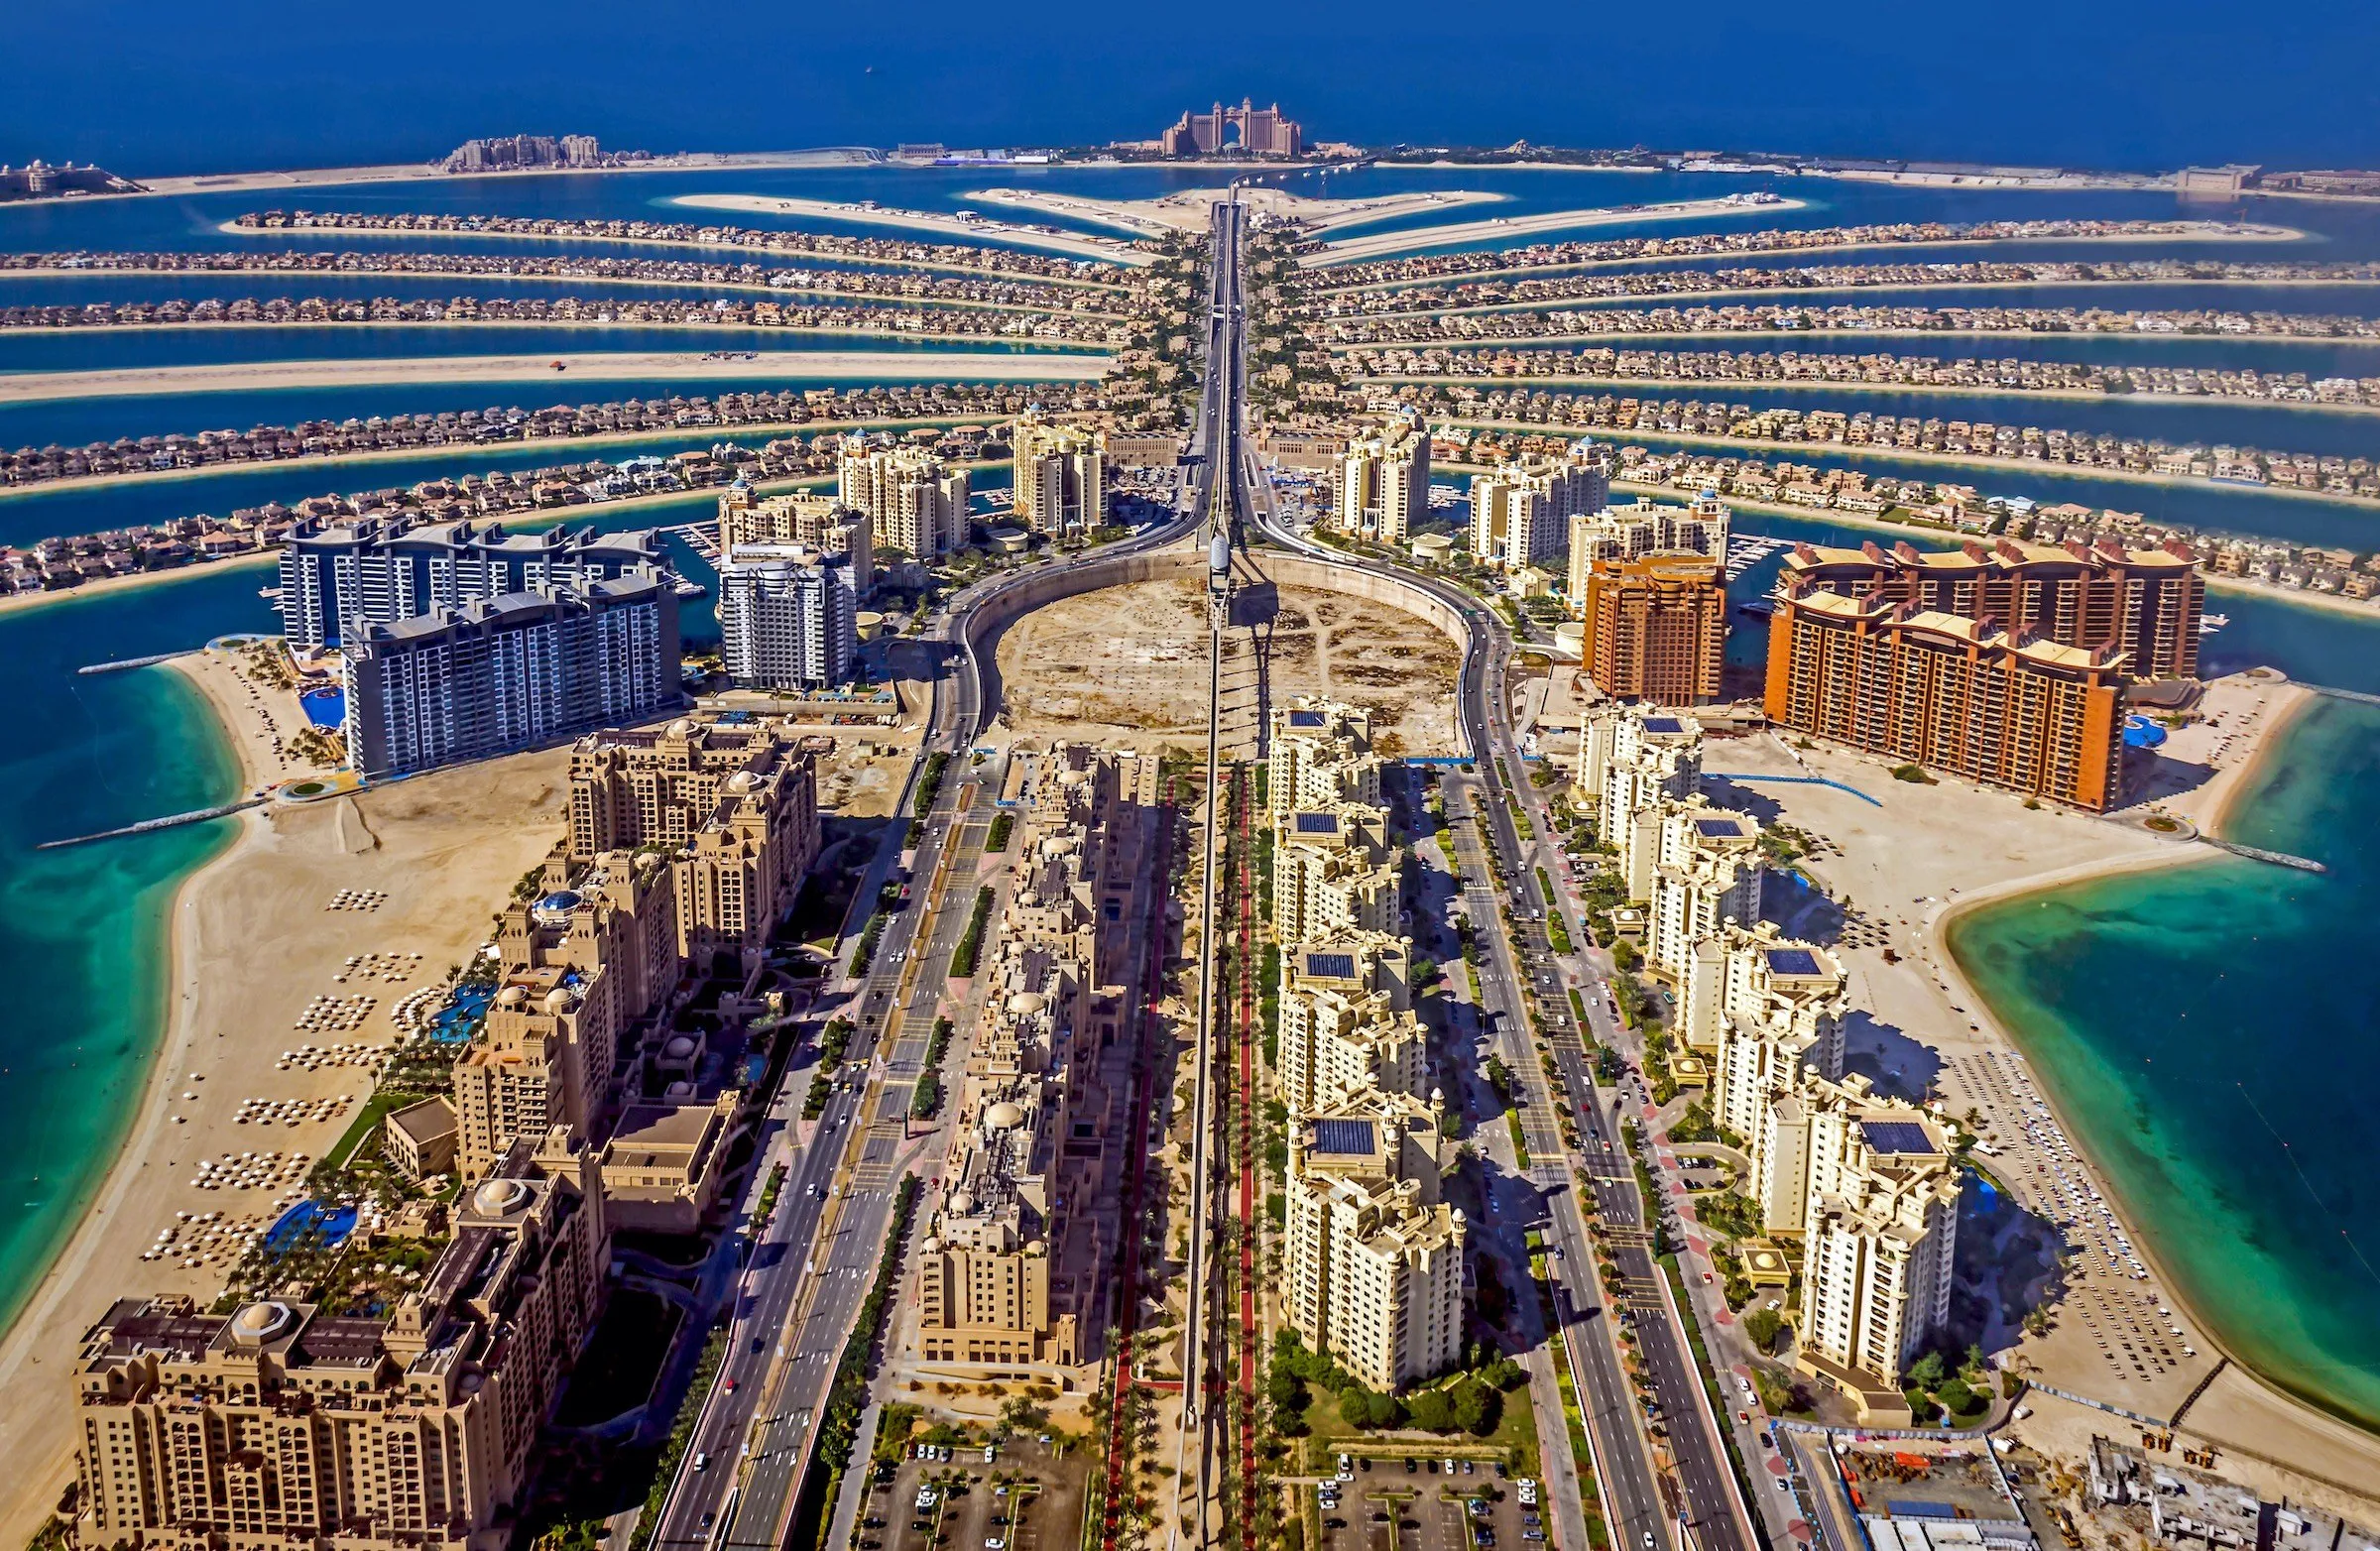 Пальмовый остров - это символ роскоши и изобилия в Дубае, где можно найти эксклюзивные рестораны, магазины и отели.